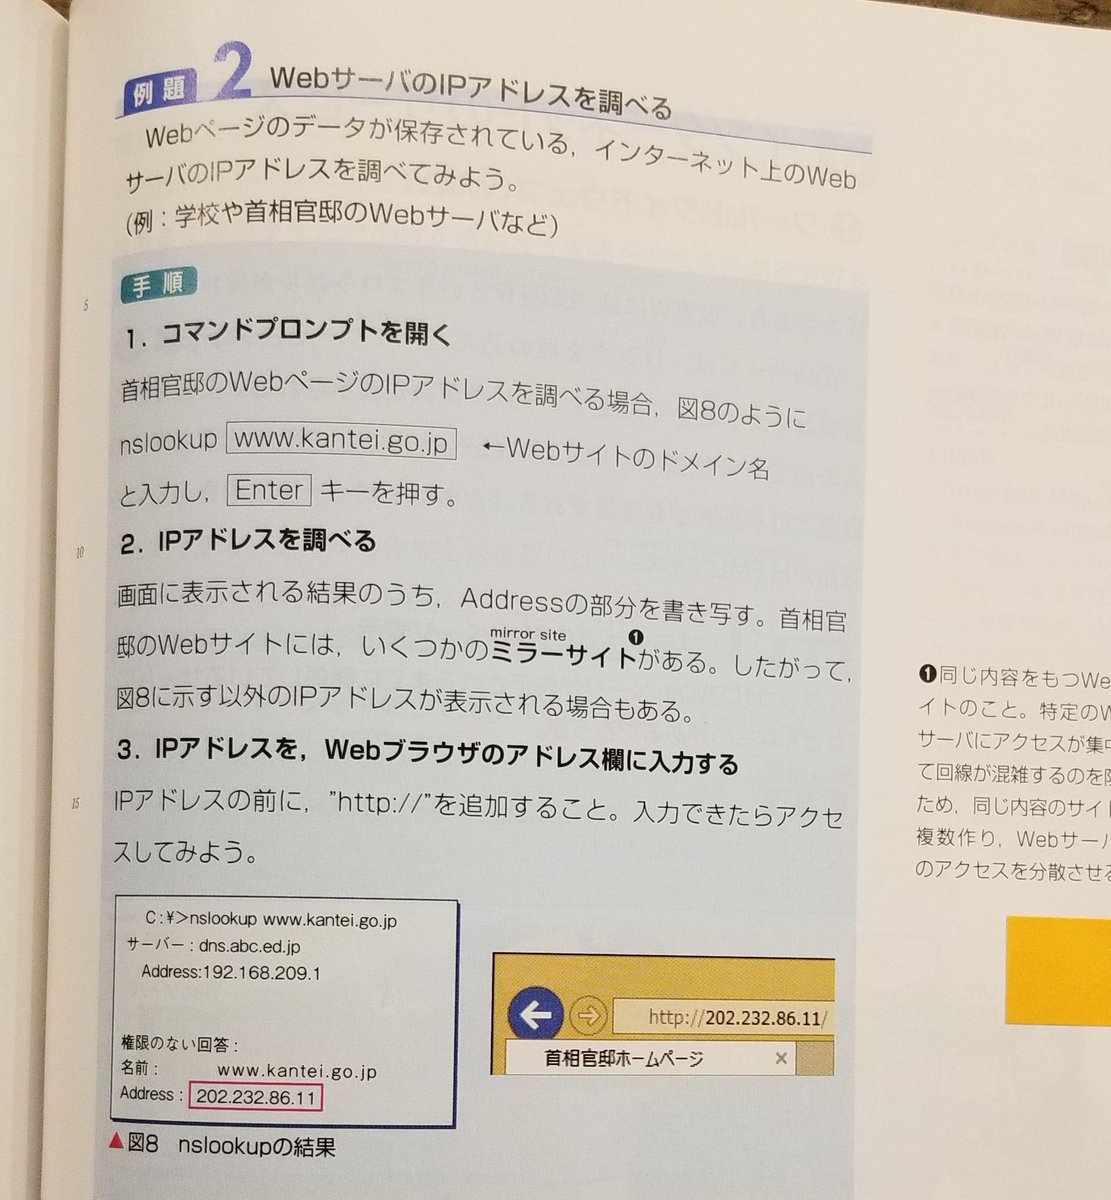 Yusuke Ando 社情311 Ipアドレス調査は定番の内容 シーザー暗号からの公開鍵暗号の紹介は教える人にとってはやや難度の高い部分か テキストマイニングツールは不明だが実習を想定していそう